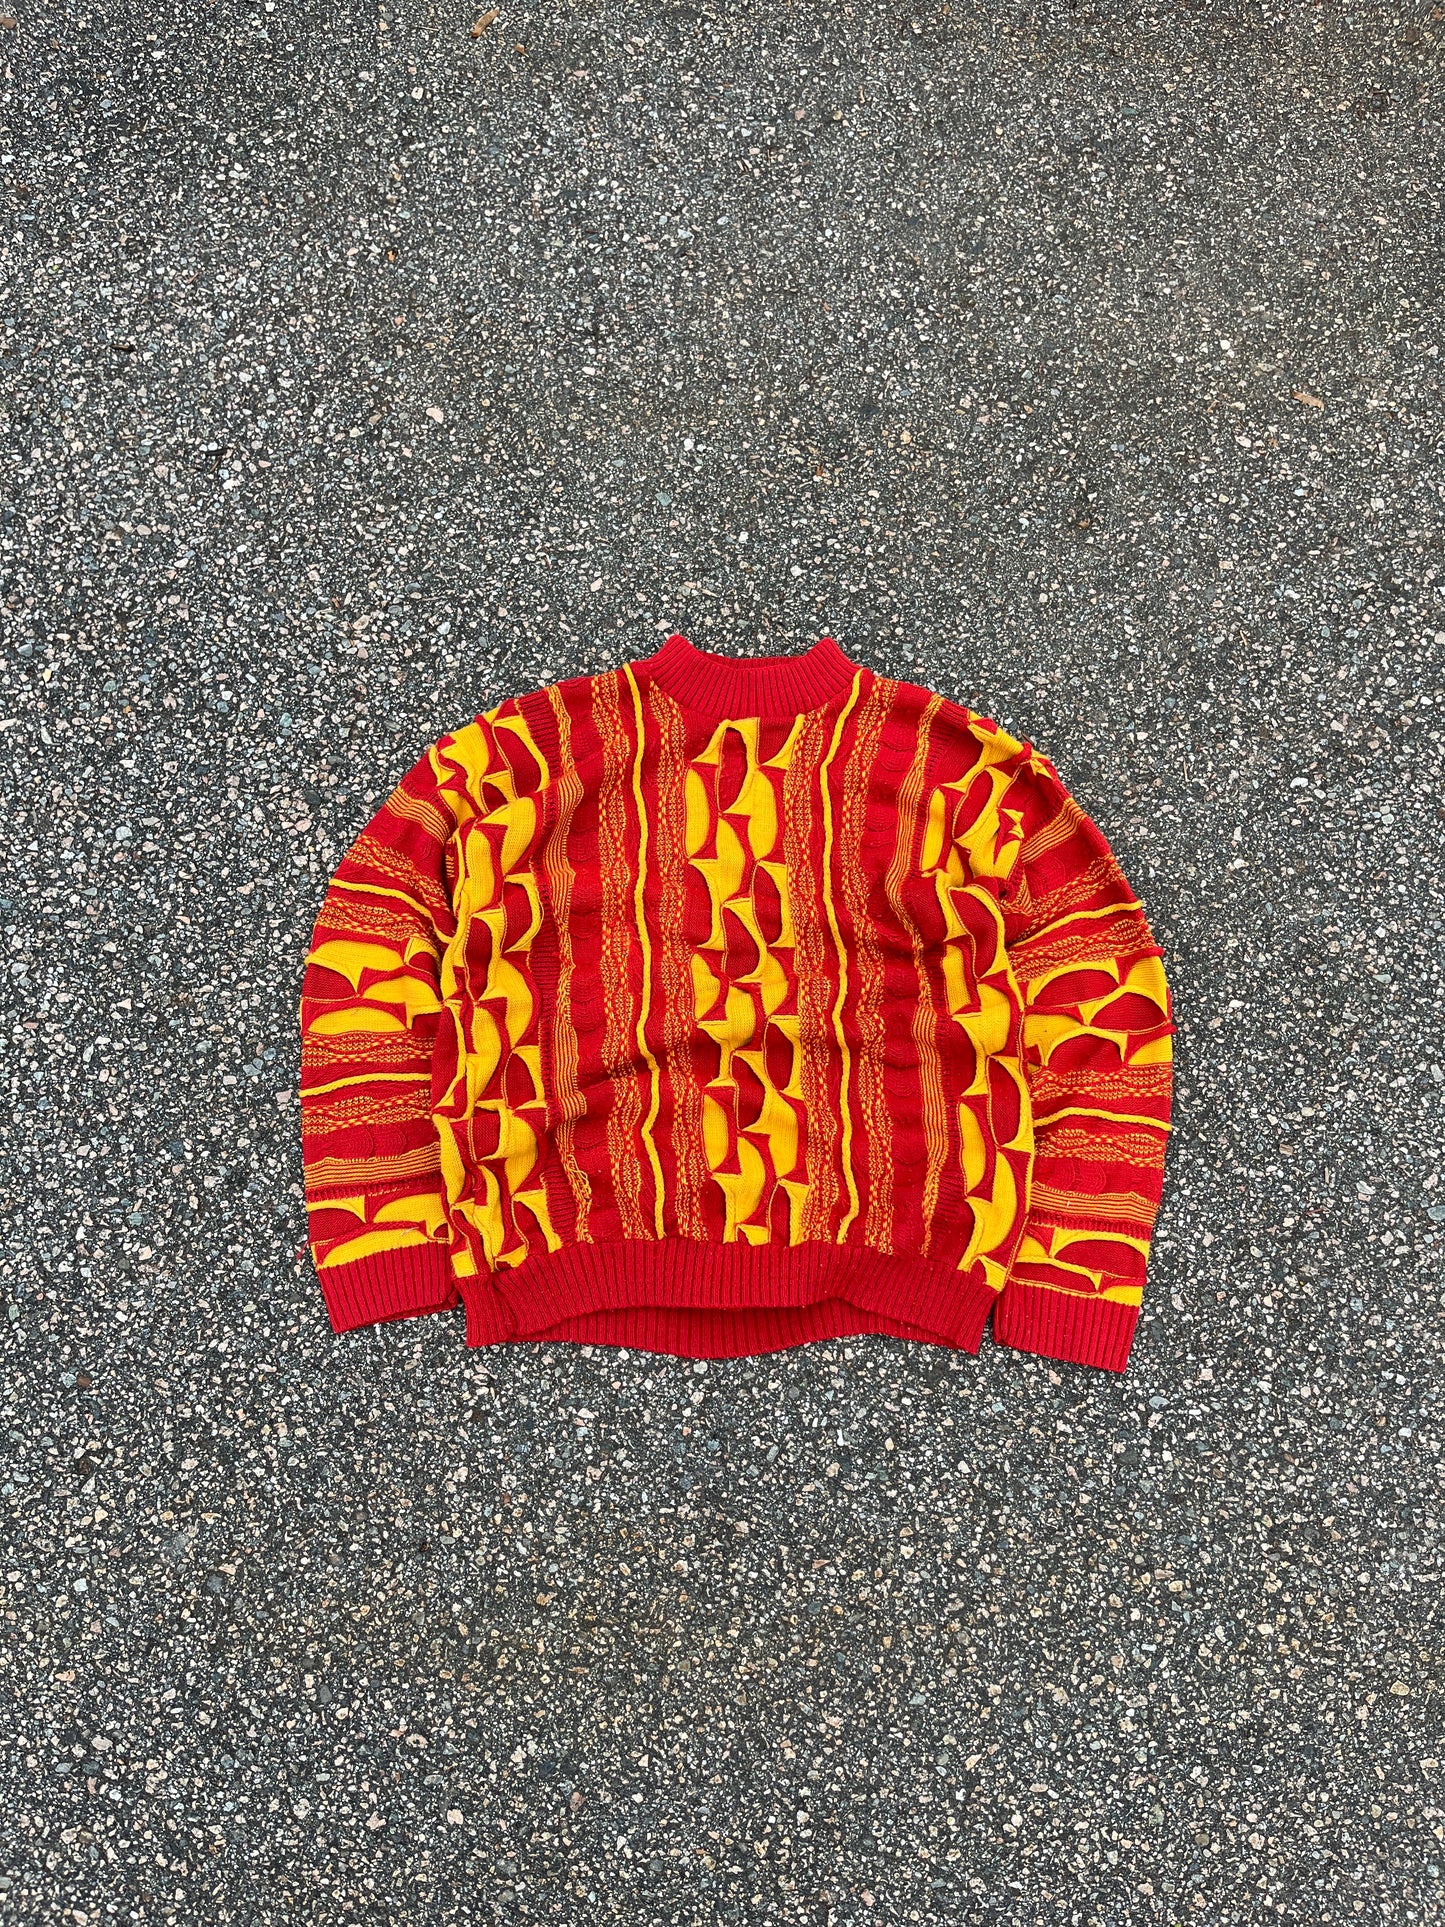 Vintage Coogi 3D Knit Cotton Sweater - Large